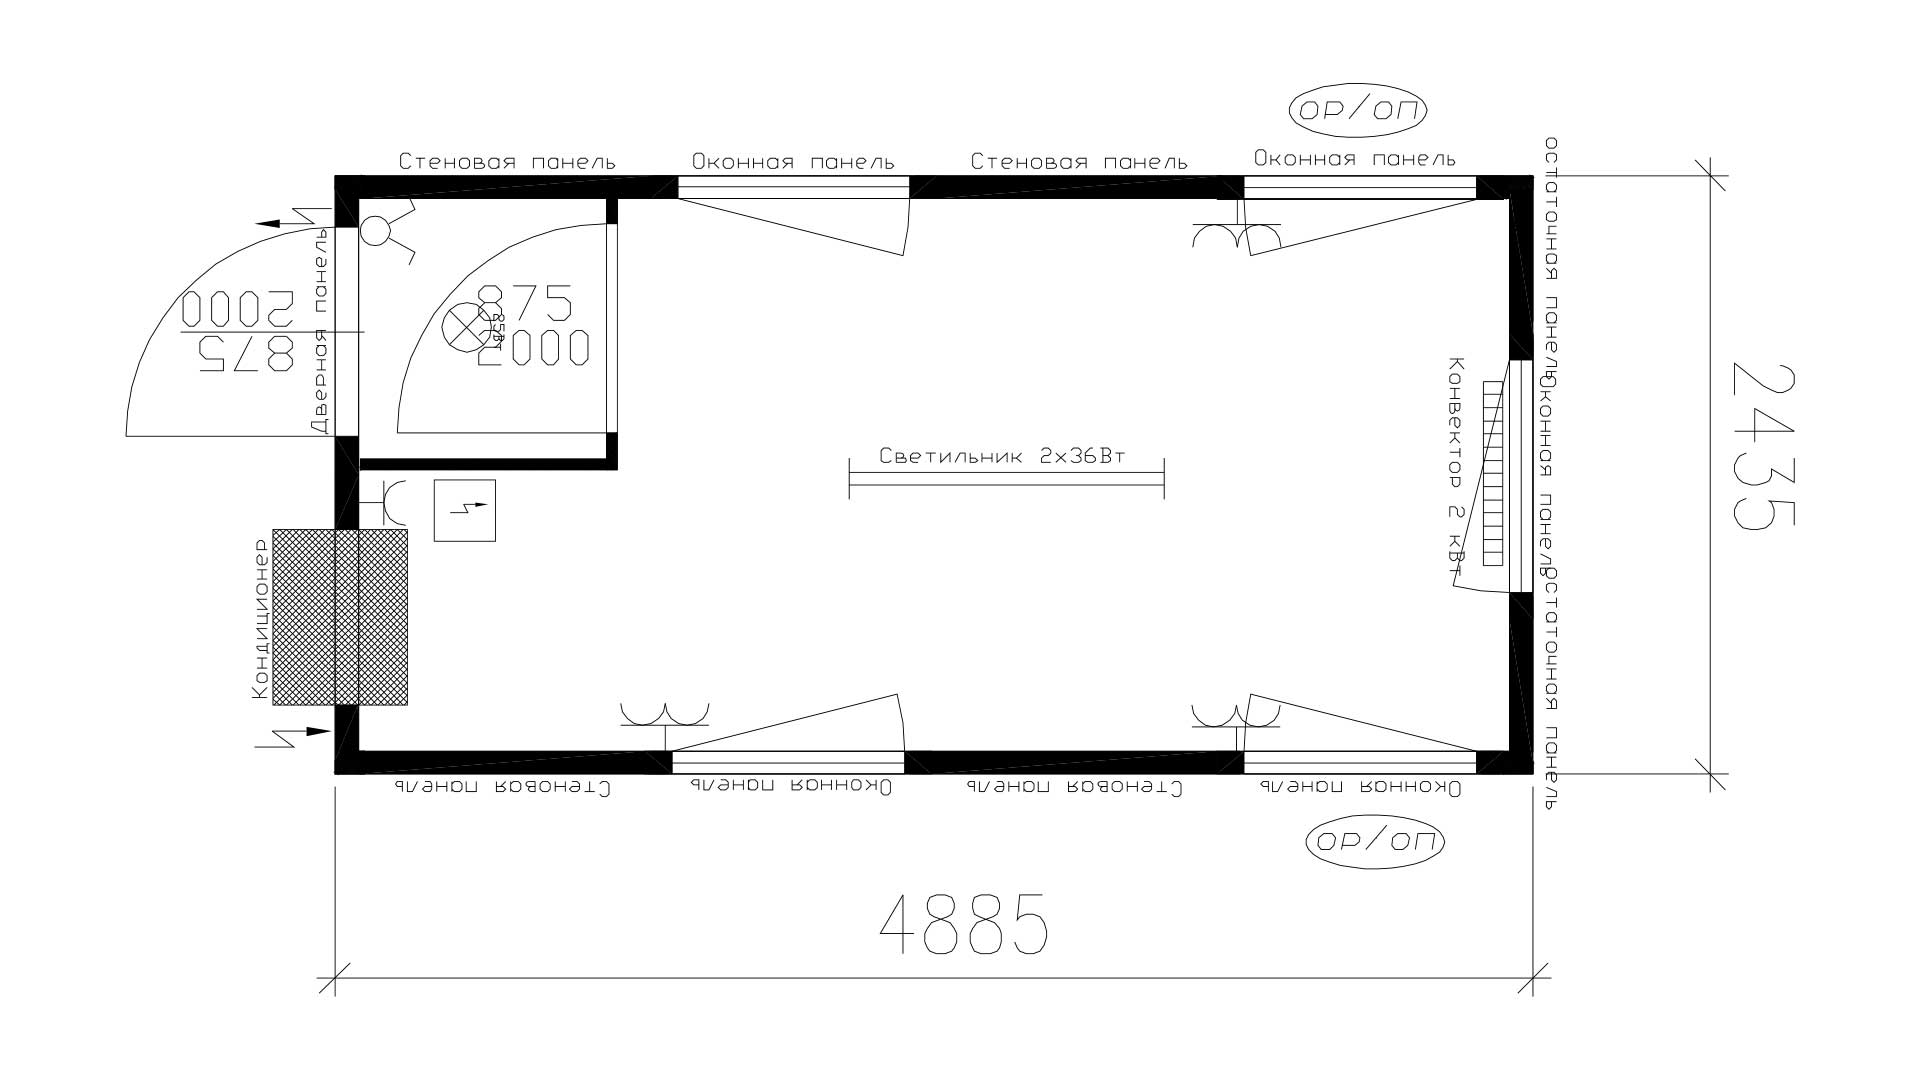 Планировка КПП с тамбуром (2 двери, 5 окон, 1 кондиционер) 16-футов, размеры: 2989/4885/2591 (Д/Ш/В) мм